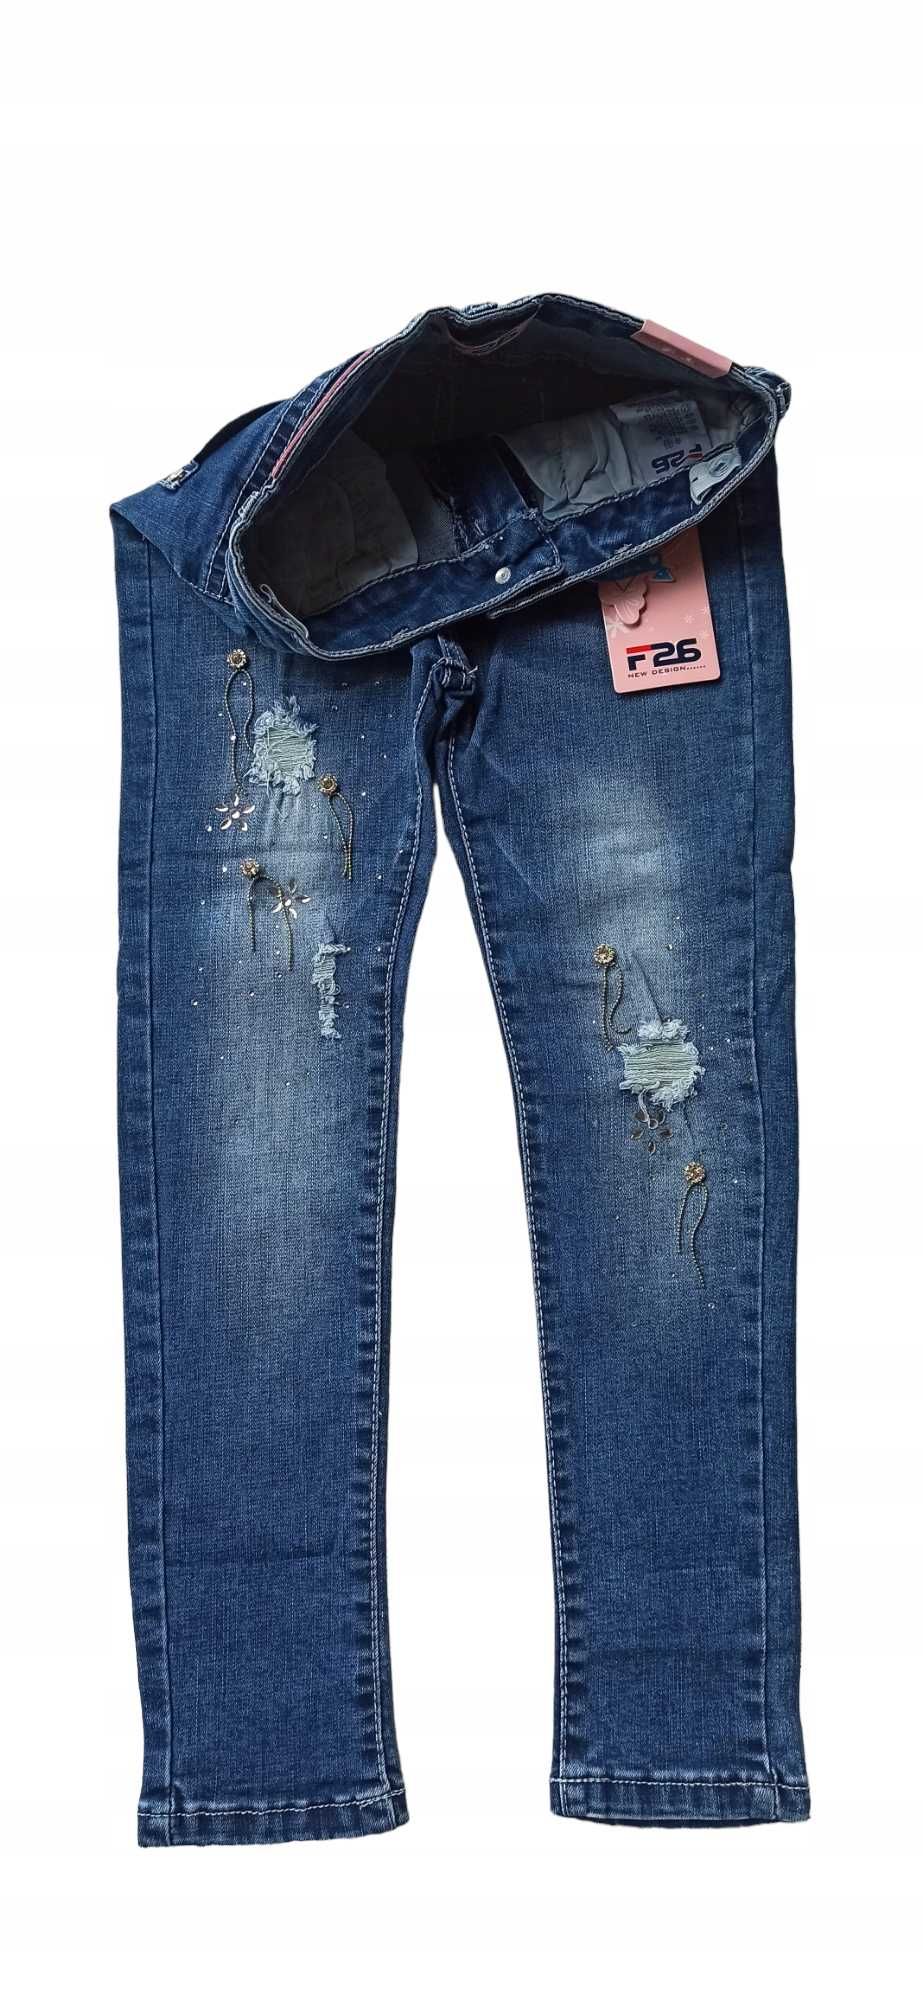 Spodnie jeans dla dziewczynki na gumce nowy  146-152